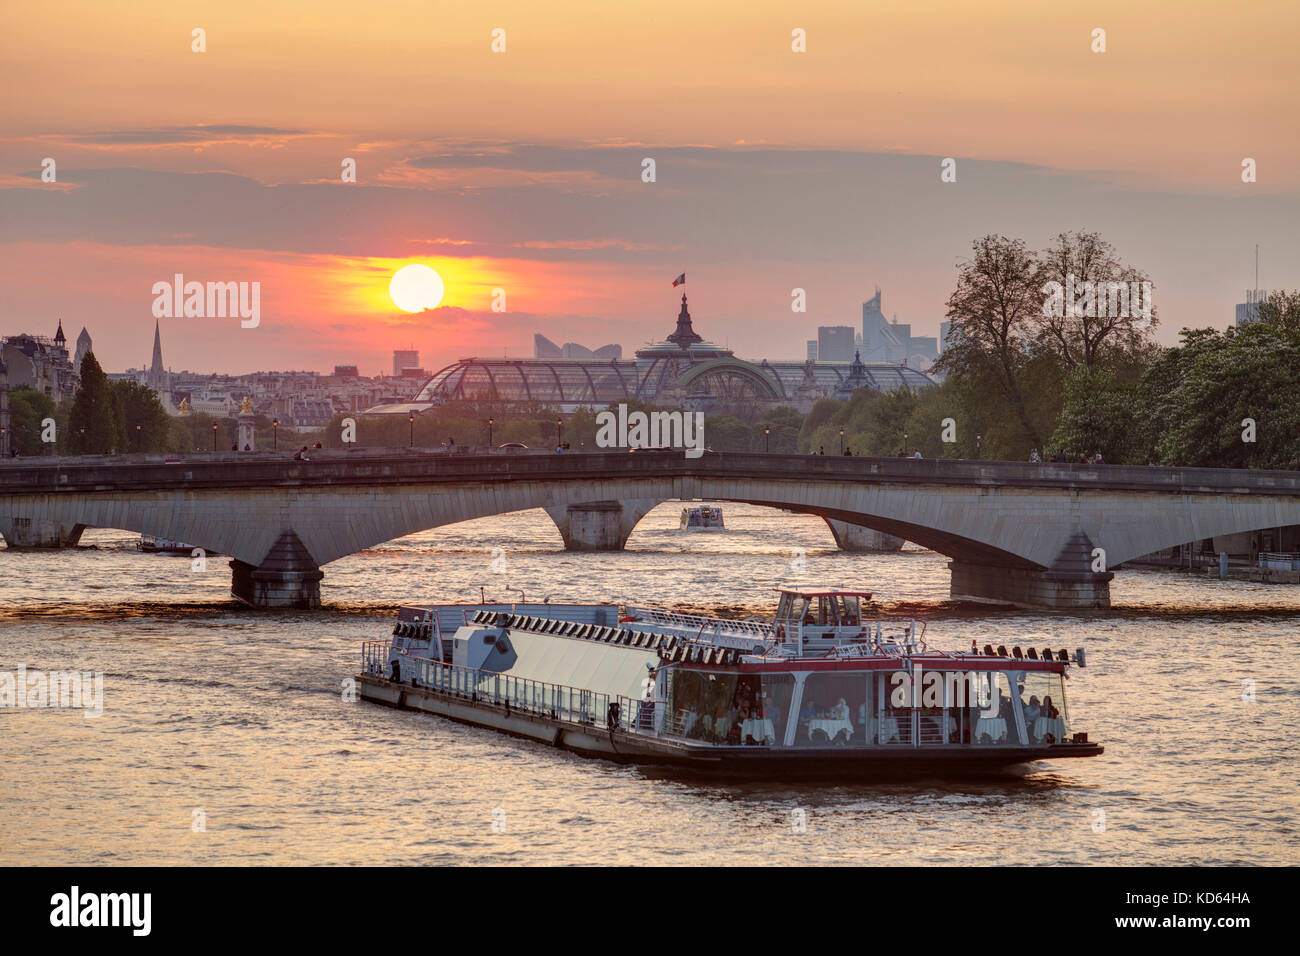 Paris (France) : coucher de soleil sur la capitale. Bateau touristique sur la Seine et la verrière du Grand Palais à Paris 8ème arrondissement / d Banque D'Images